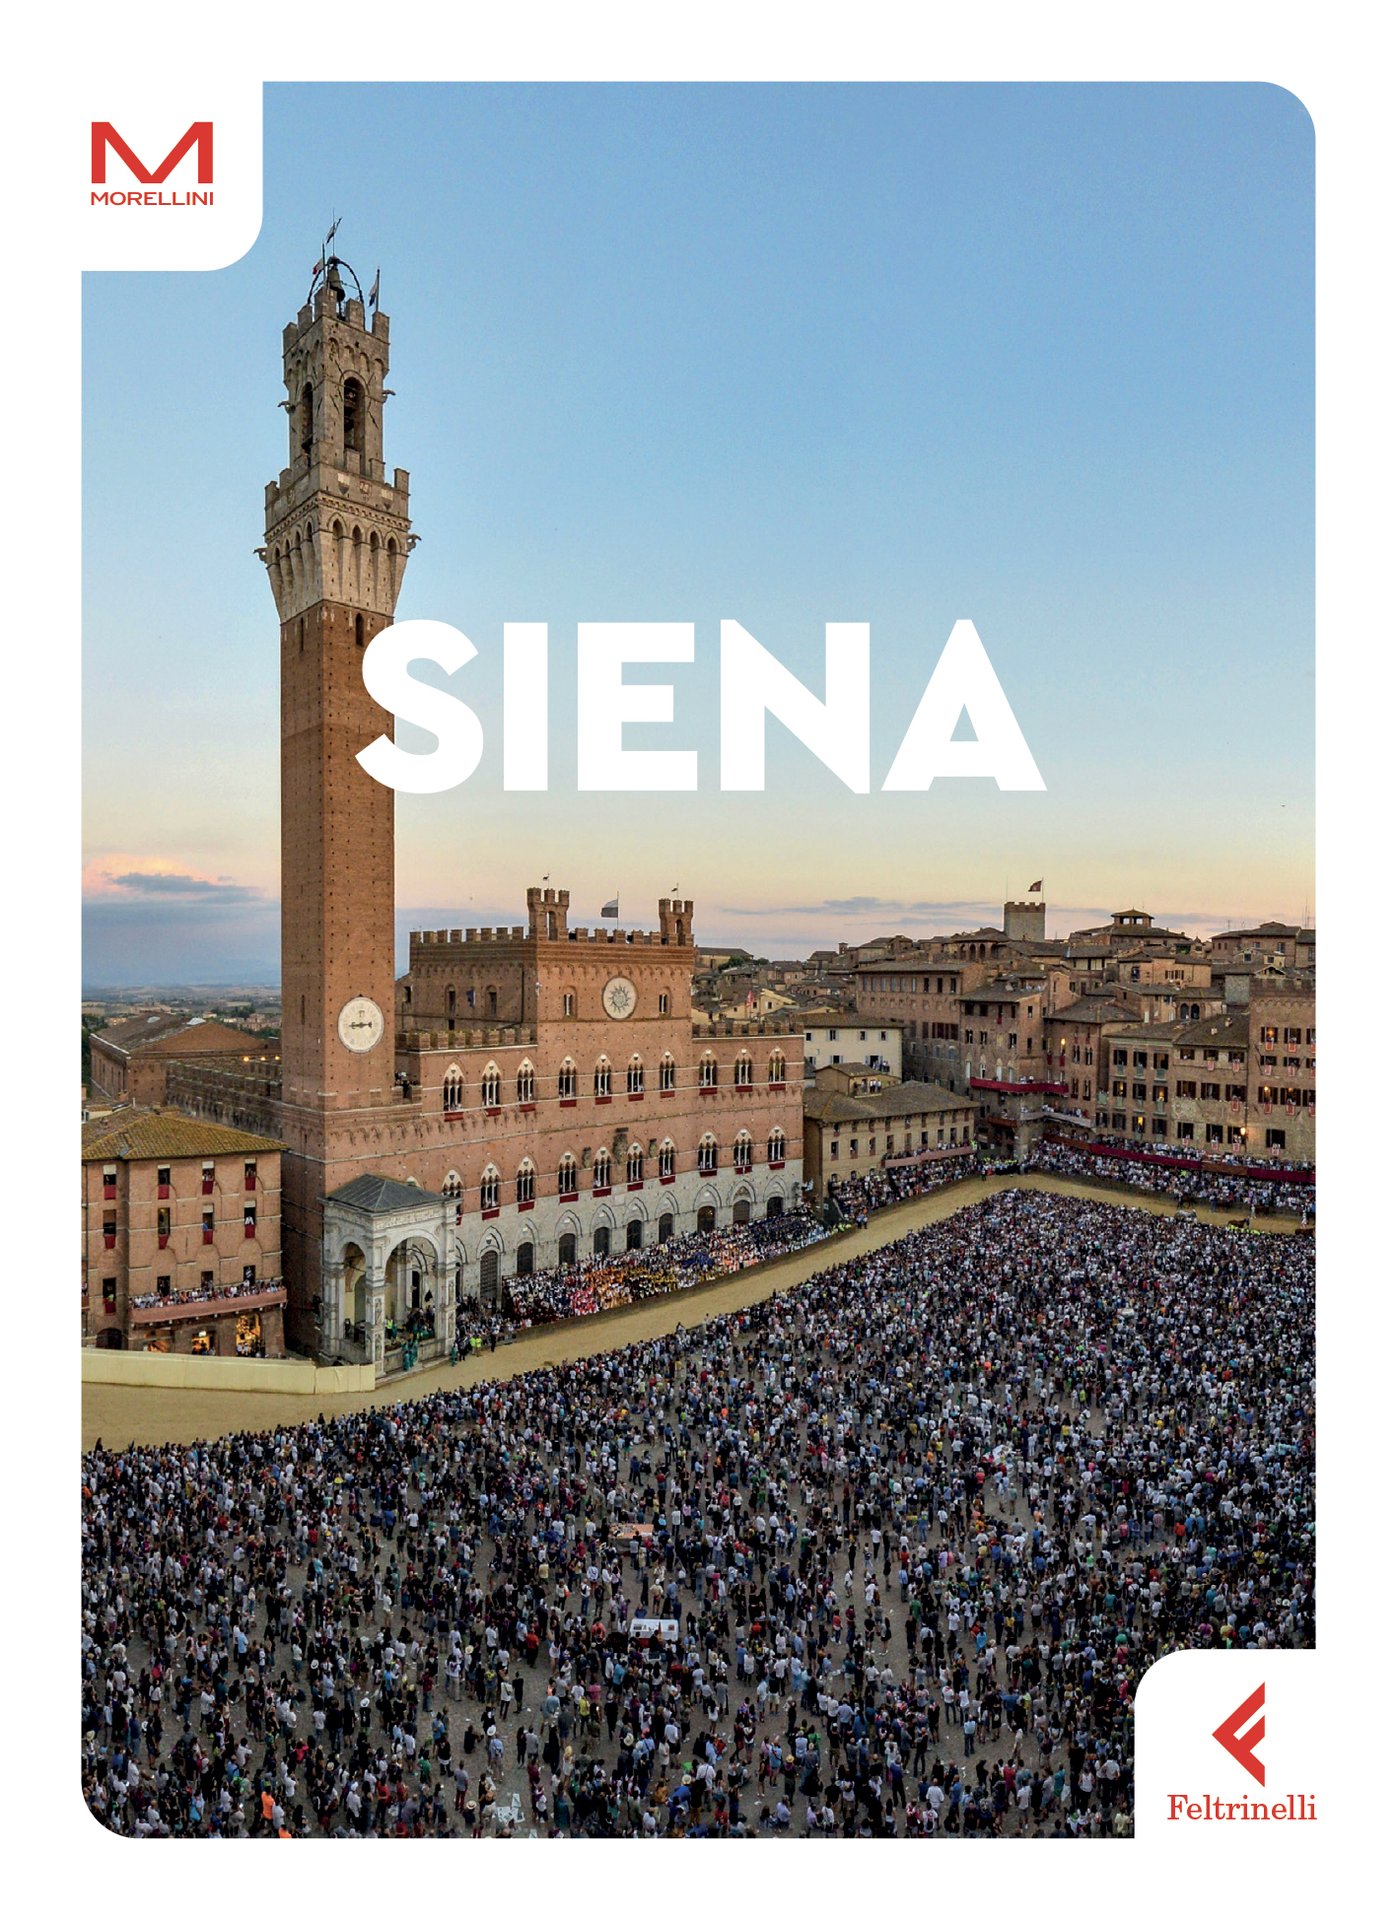 Presentazione guida "Siena" a Palazzo Pubblico